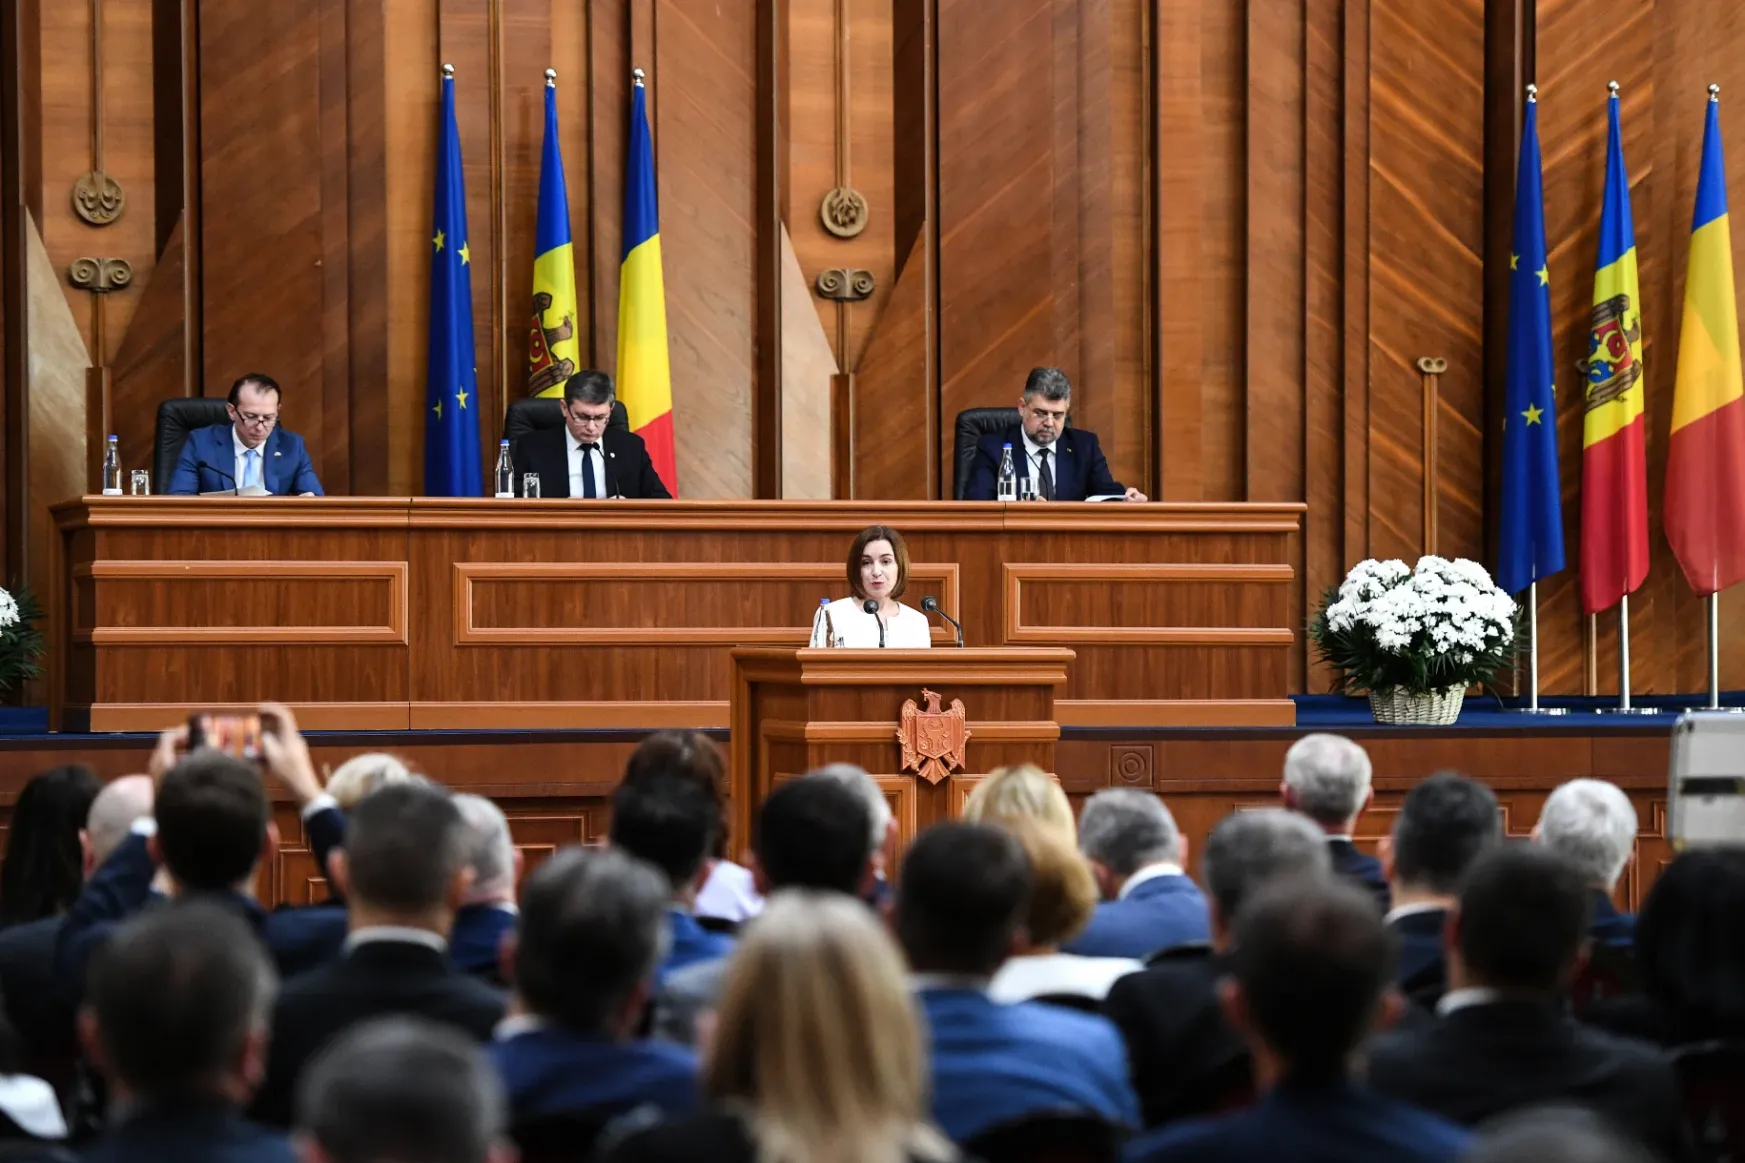 Megtartotta közös ülését a Moldovai Köztársaság és Románia parlamentje